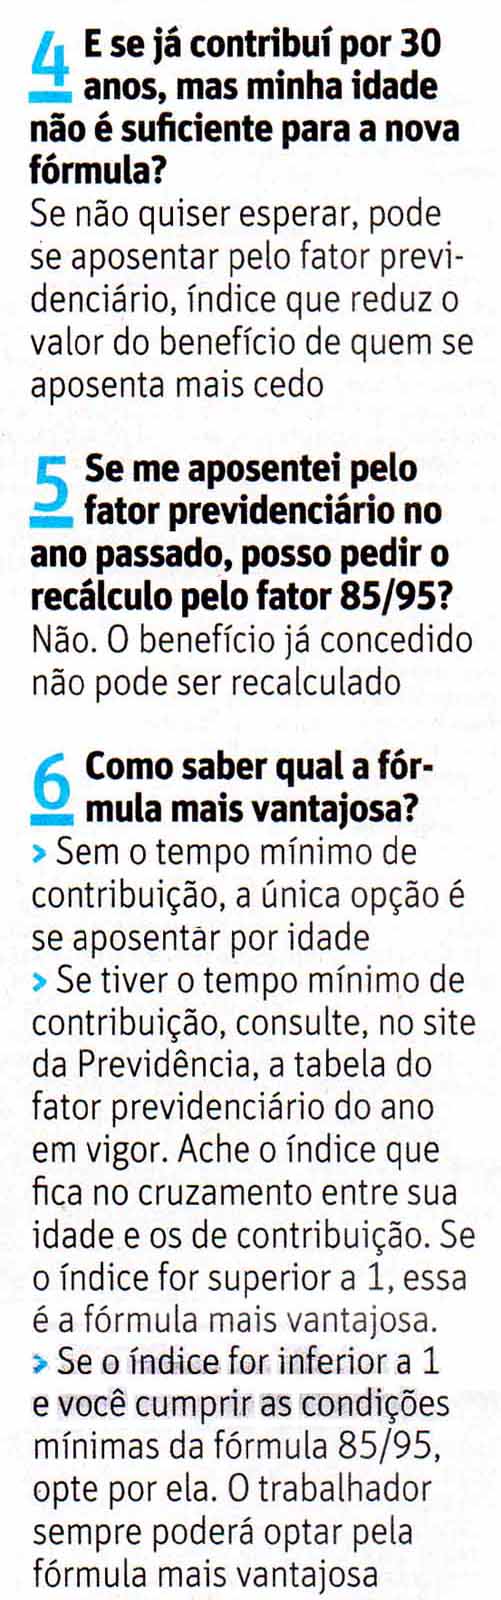 Folha de So Paulo - 06/11/15 - Aposentadoria: 6 Perguntas